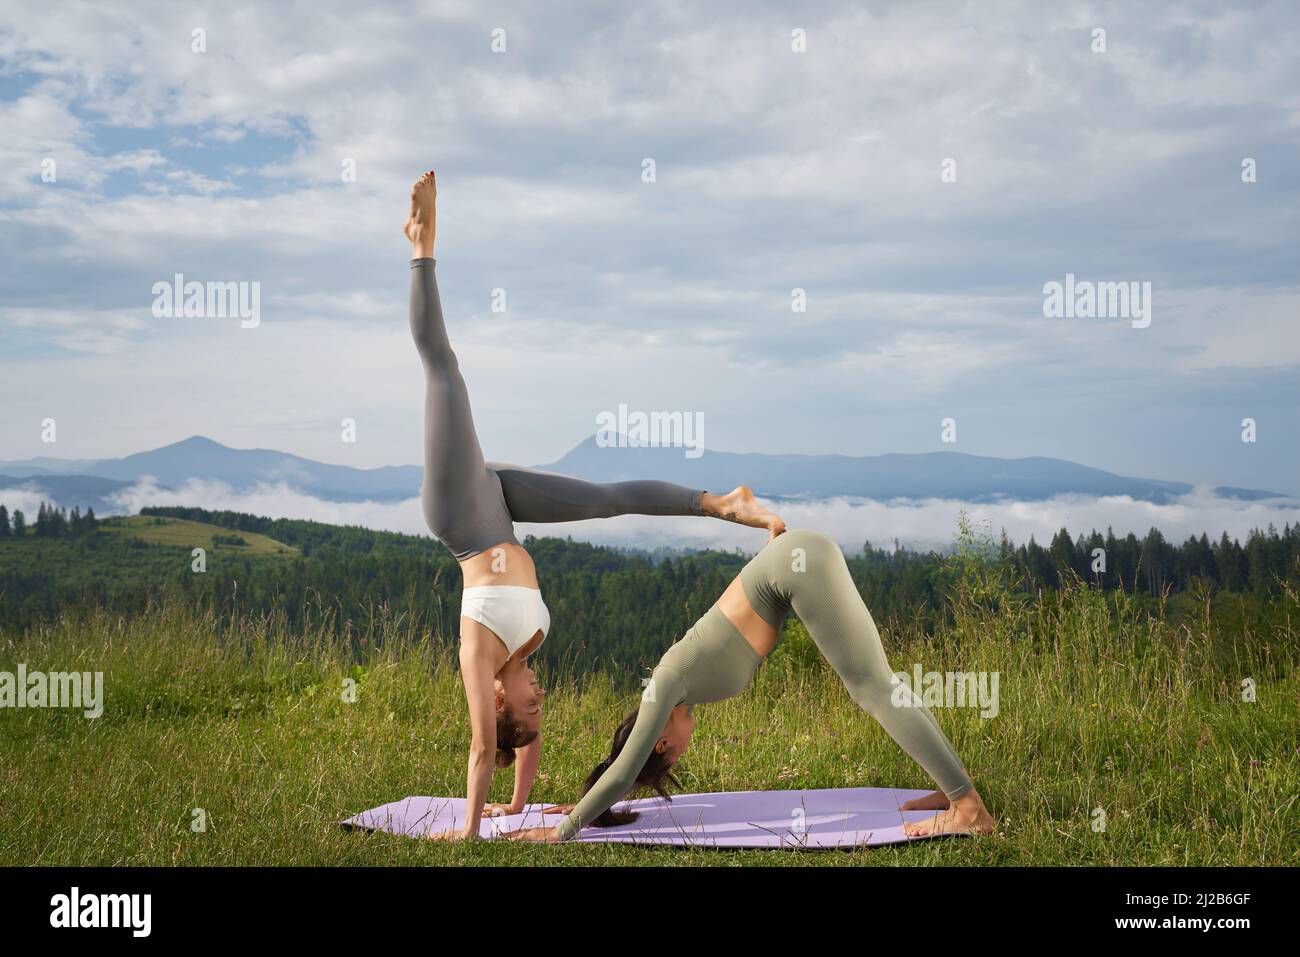 Deux femmes caucasiennes en vêtements de sport pratiquant l'acro yoga pendant la journée d'été dans les montagnes. Concept de personnes, modes de vie sains et activités de plein air. Banque D'Images